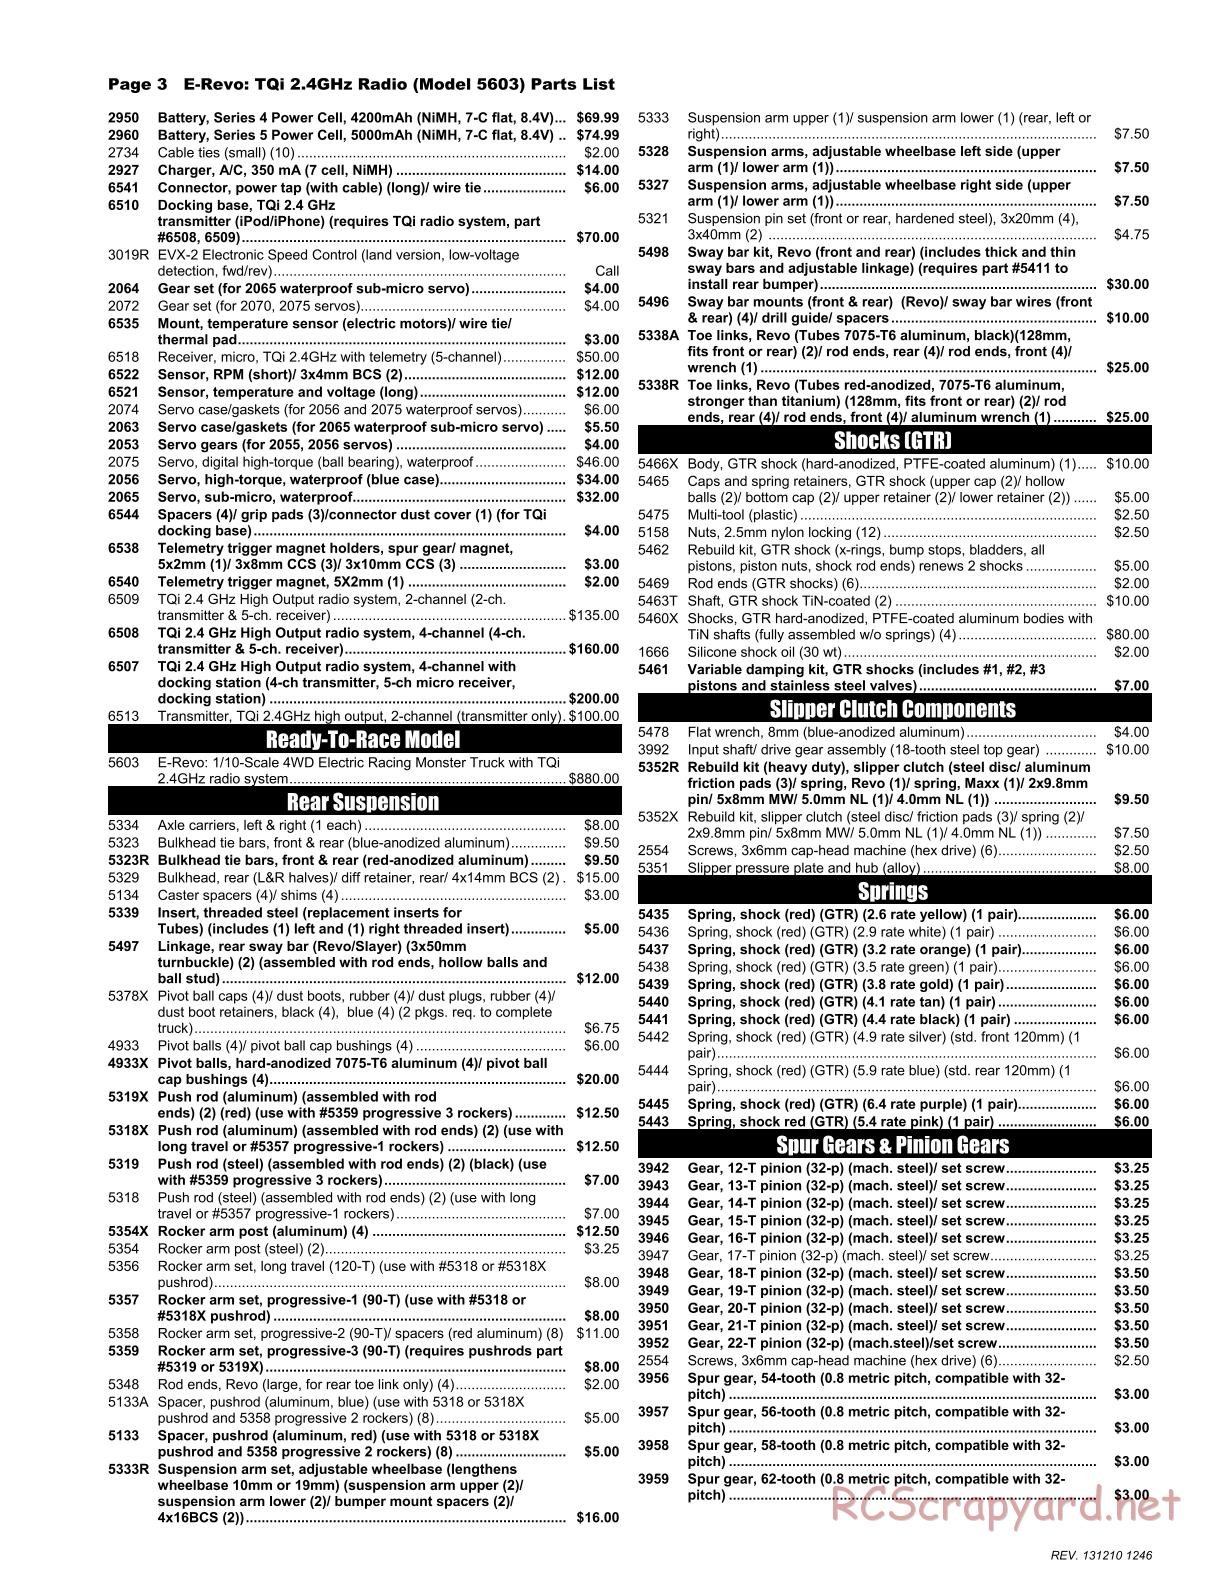 Traxxas - E-Revo (2010) - Parts List - Page 3